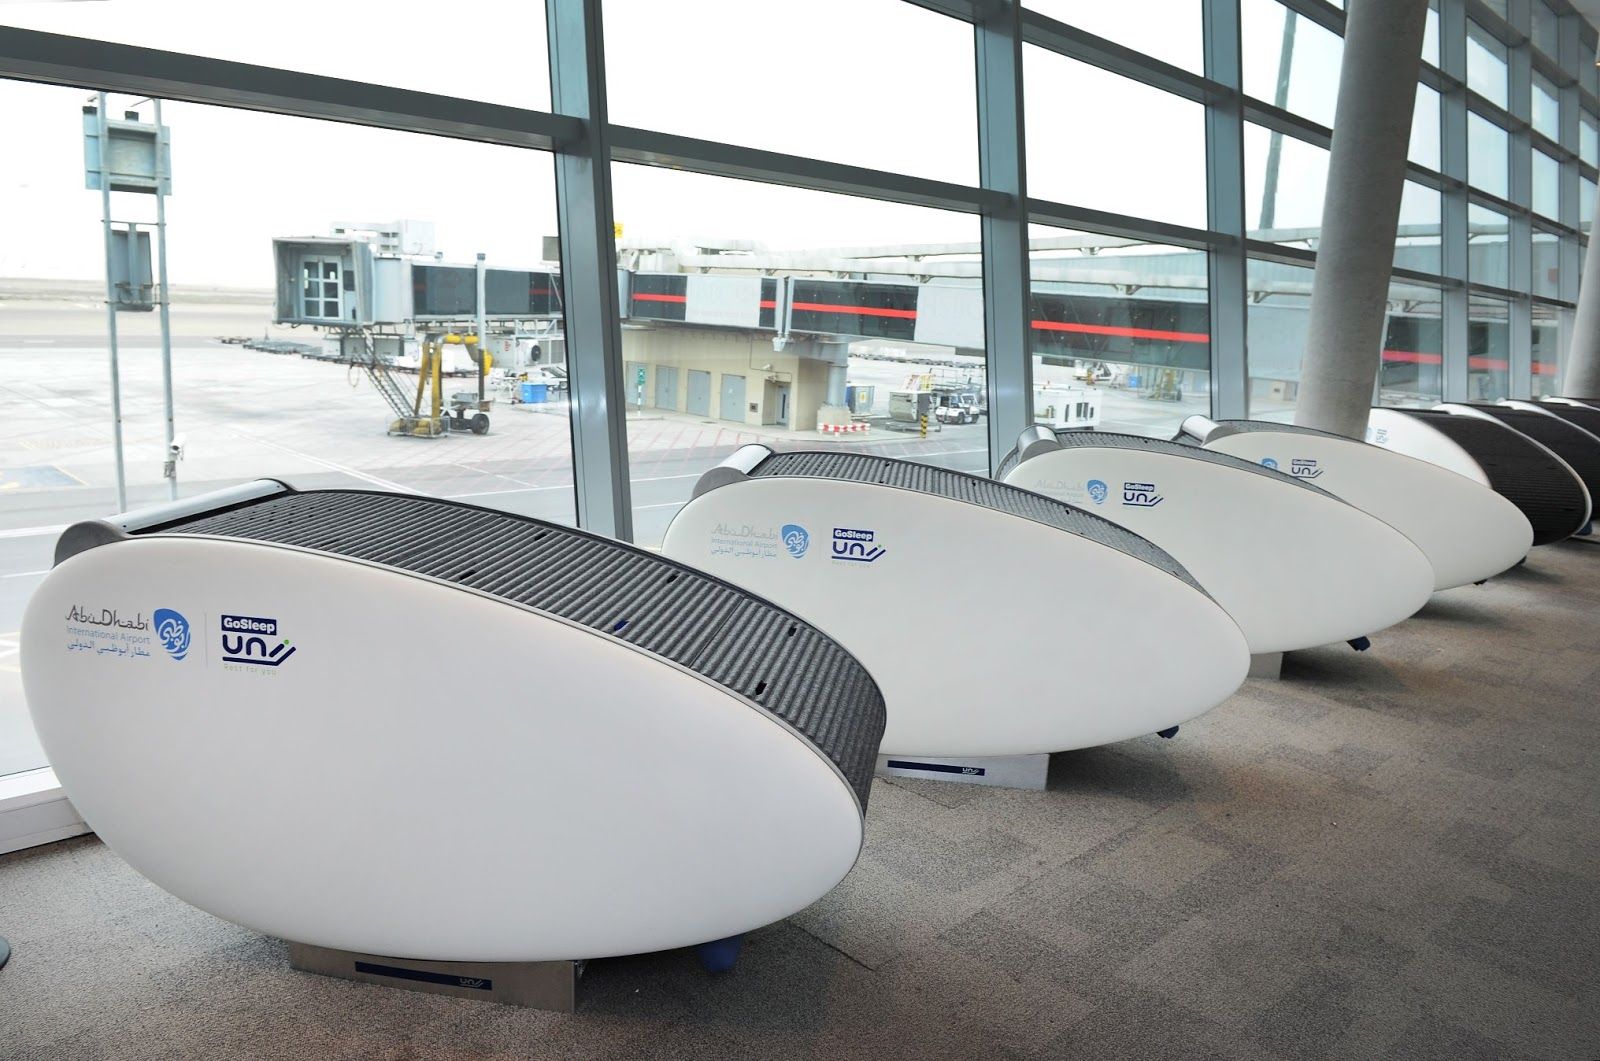 ¿Sabías que hay aeropuertos en los que puedes quedarte a dormir? (Aeropuerto Abu Dabi)